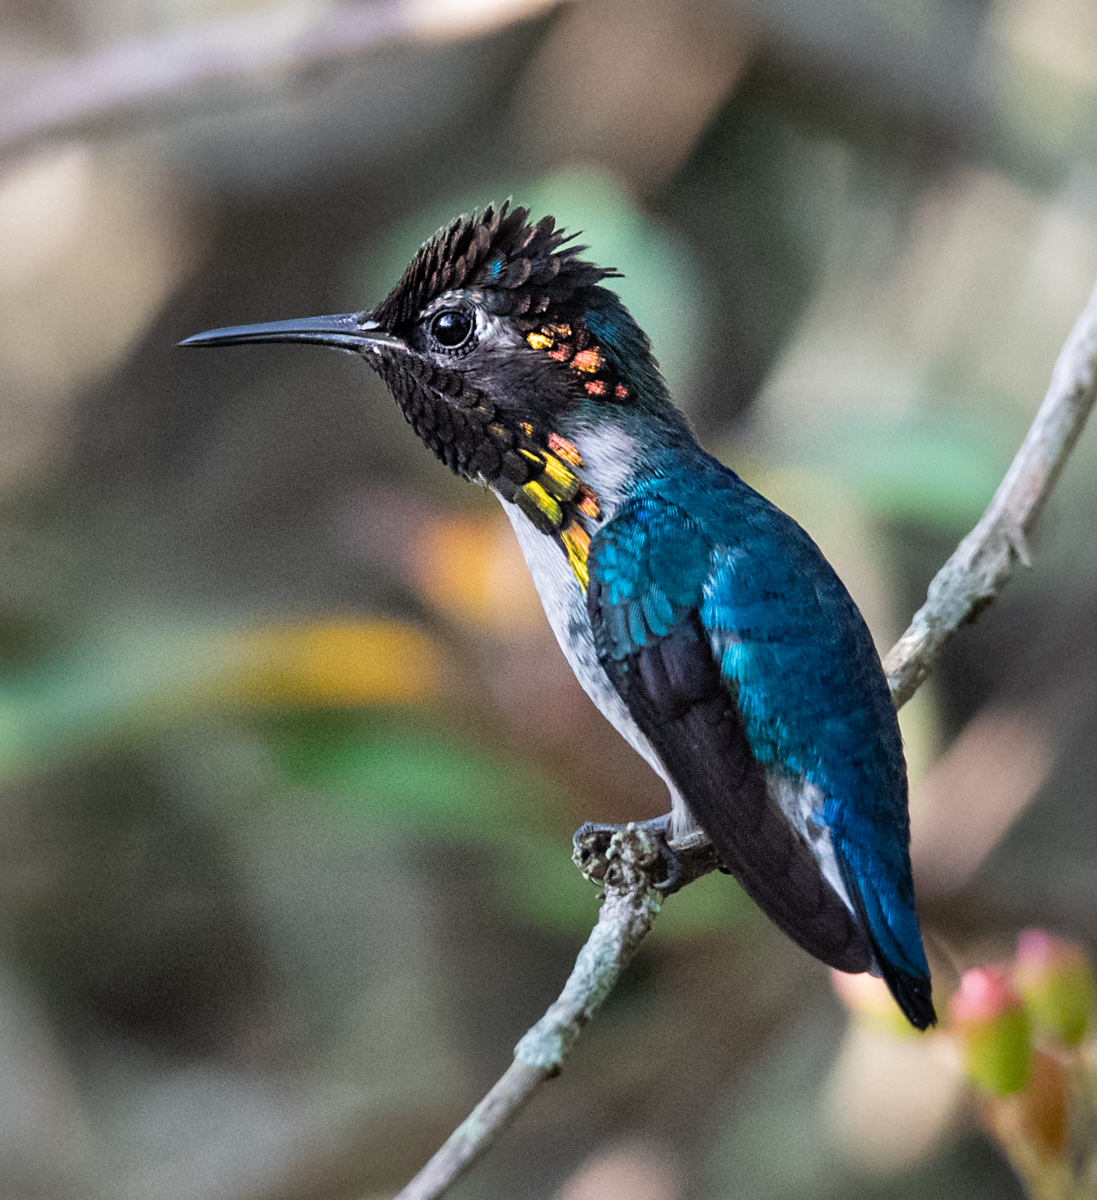 The Bee Hummingbird: A Rare Cuban Jewel